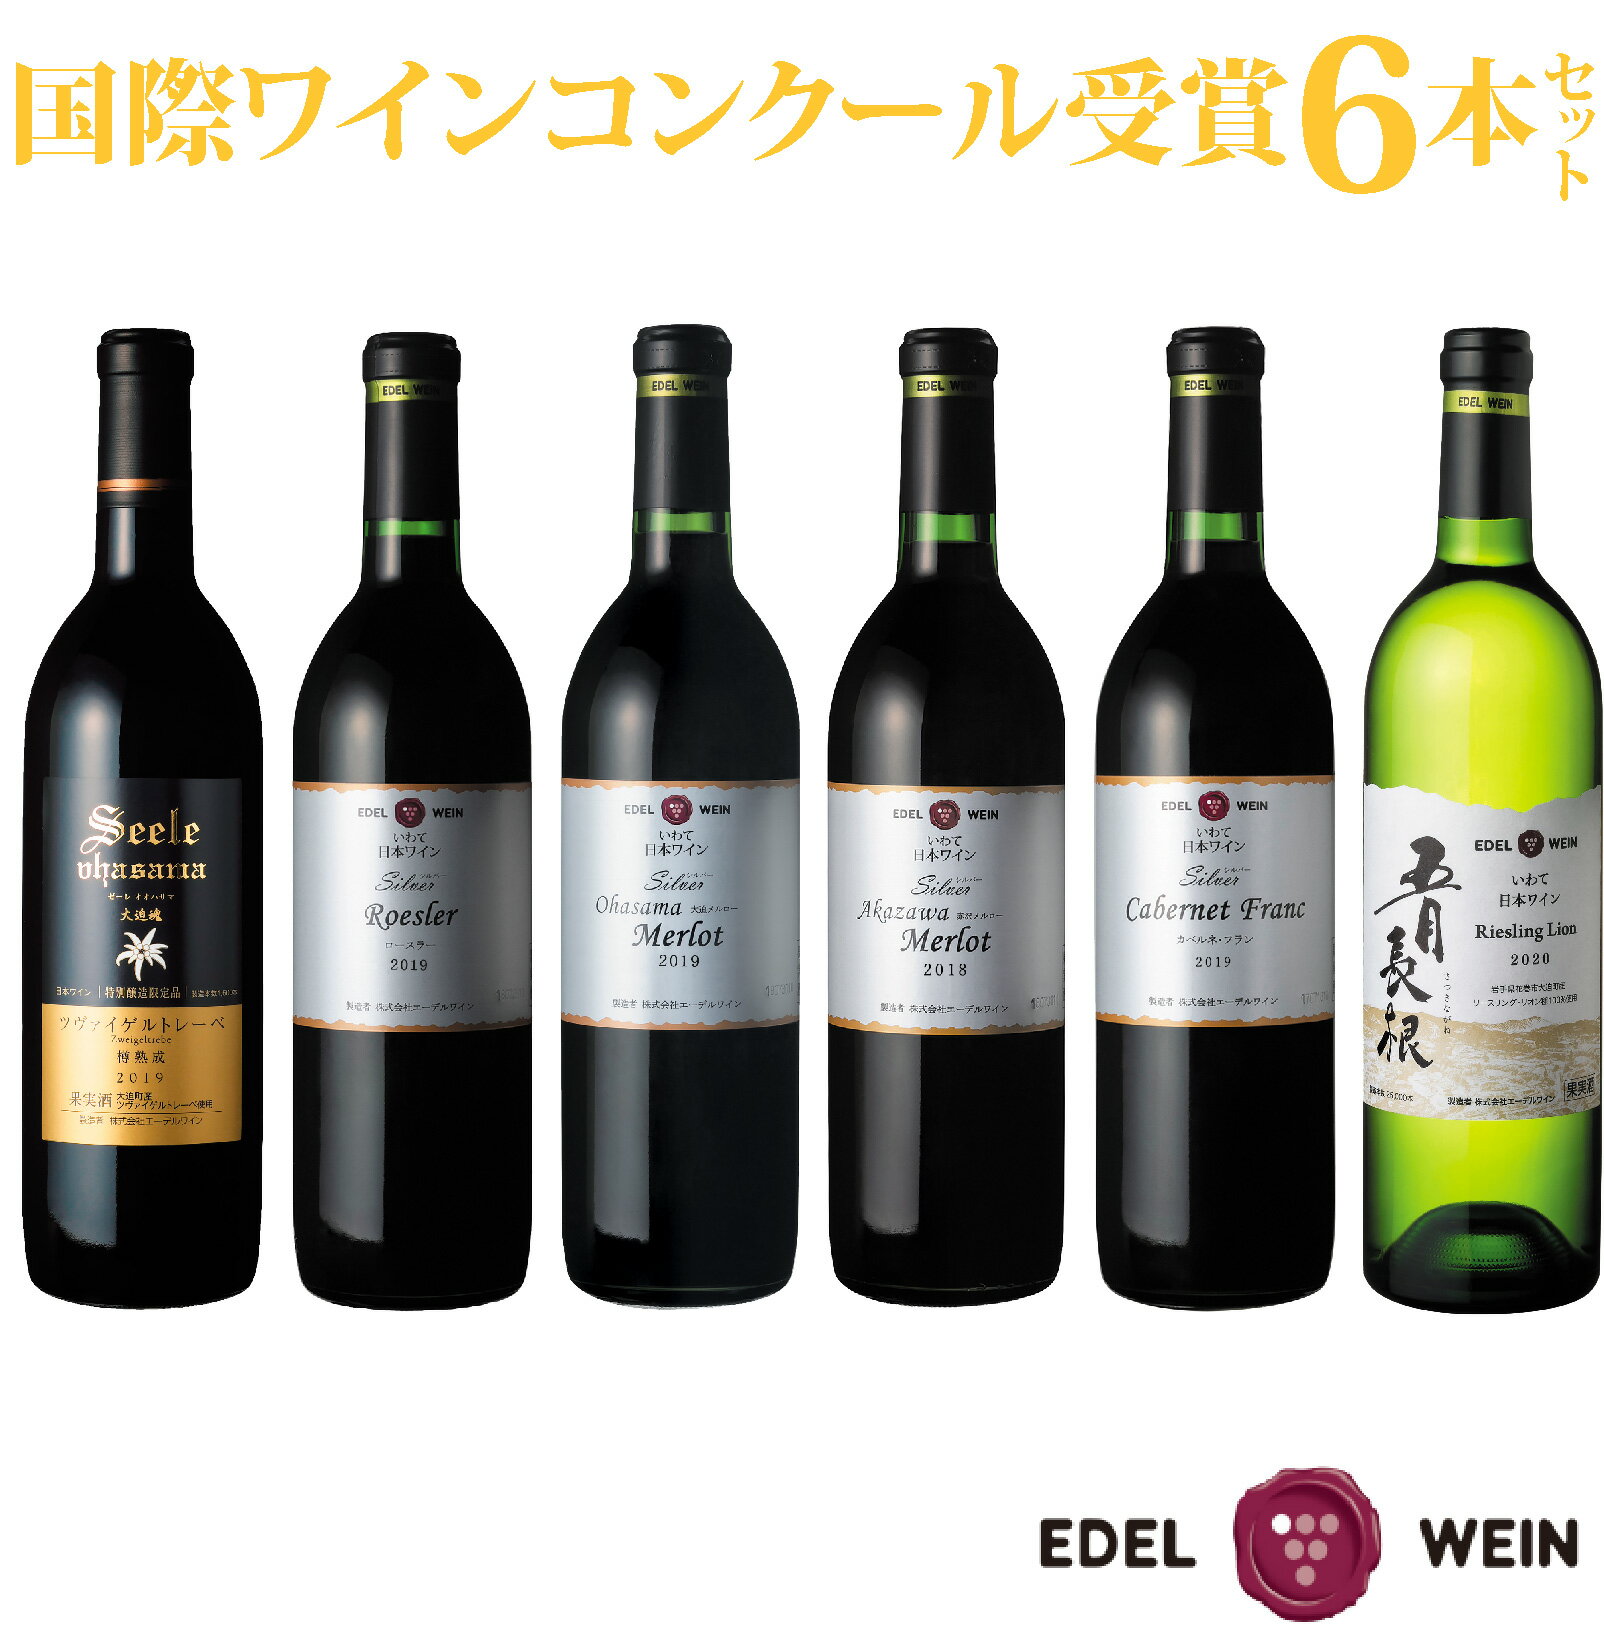 【ふるさと納税】国際ワインコンクール受賞 6本セット 赤 白